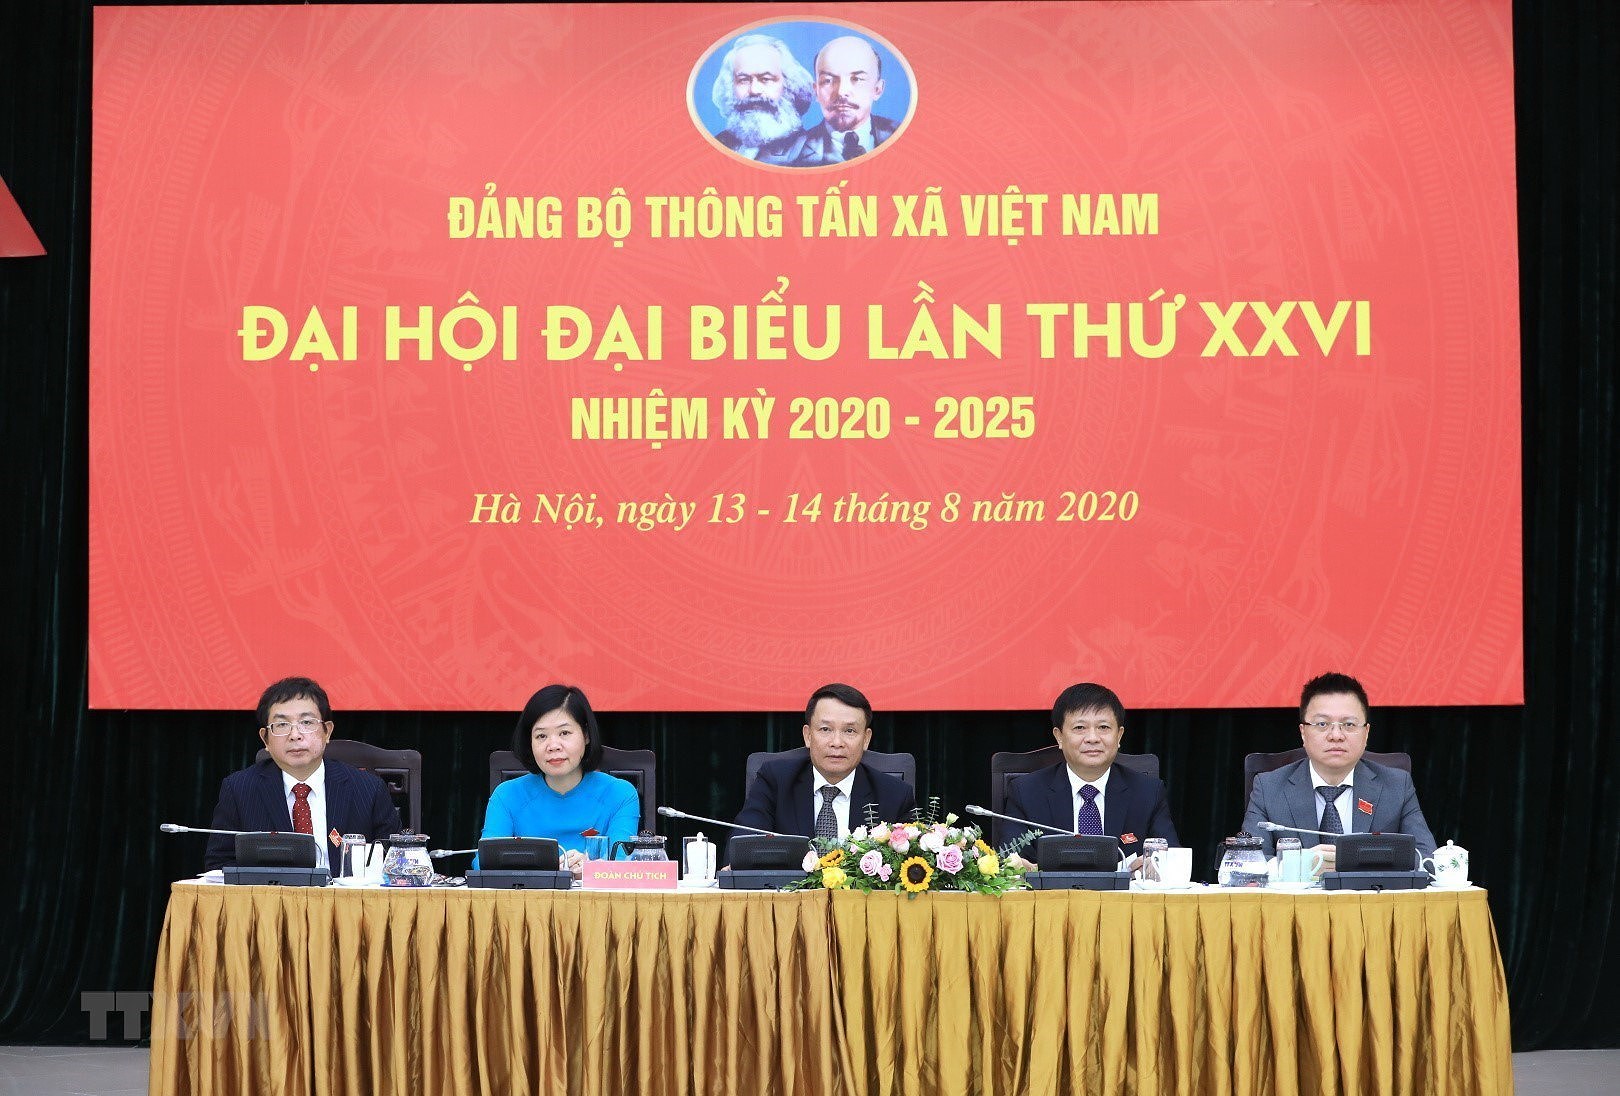 [Photo] Dai hoi dai bieu Dang bo Thong tan xa Viet Nam lan thu XXVI hinh anh 10